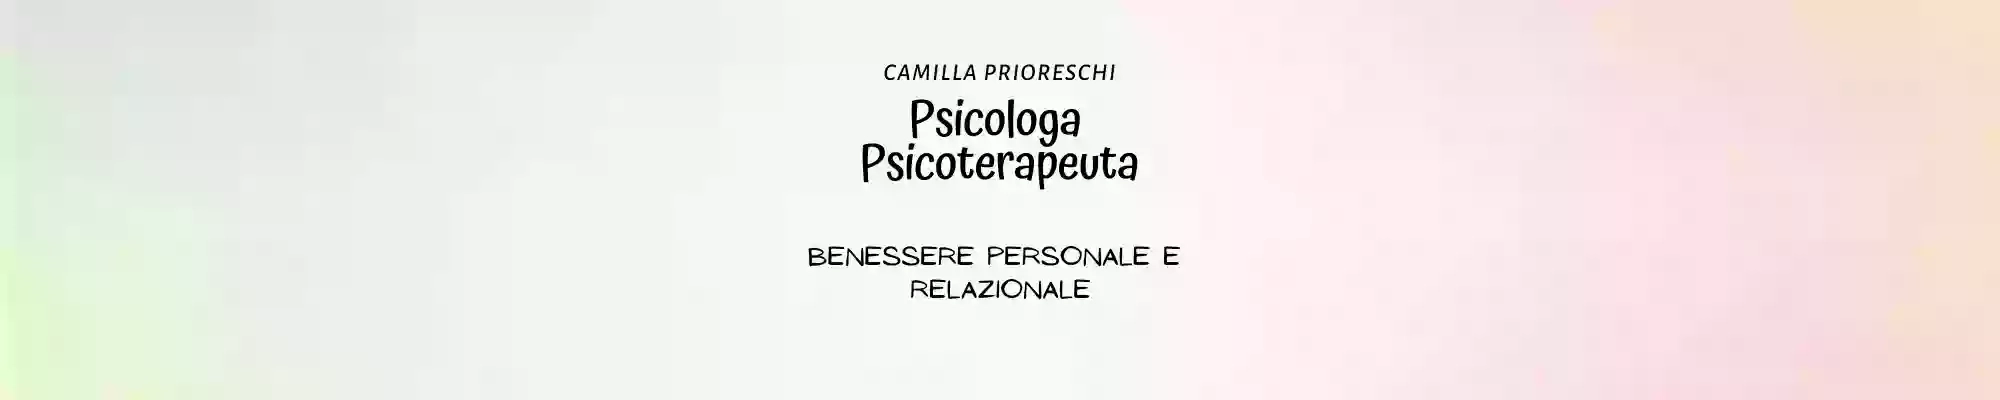 D.ssa Camilla Prioreschi Psicologa Psicoterapeuta EMDR